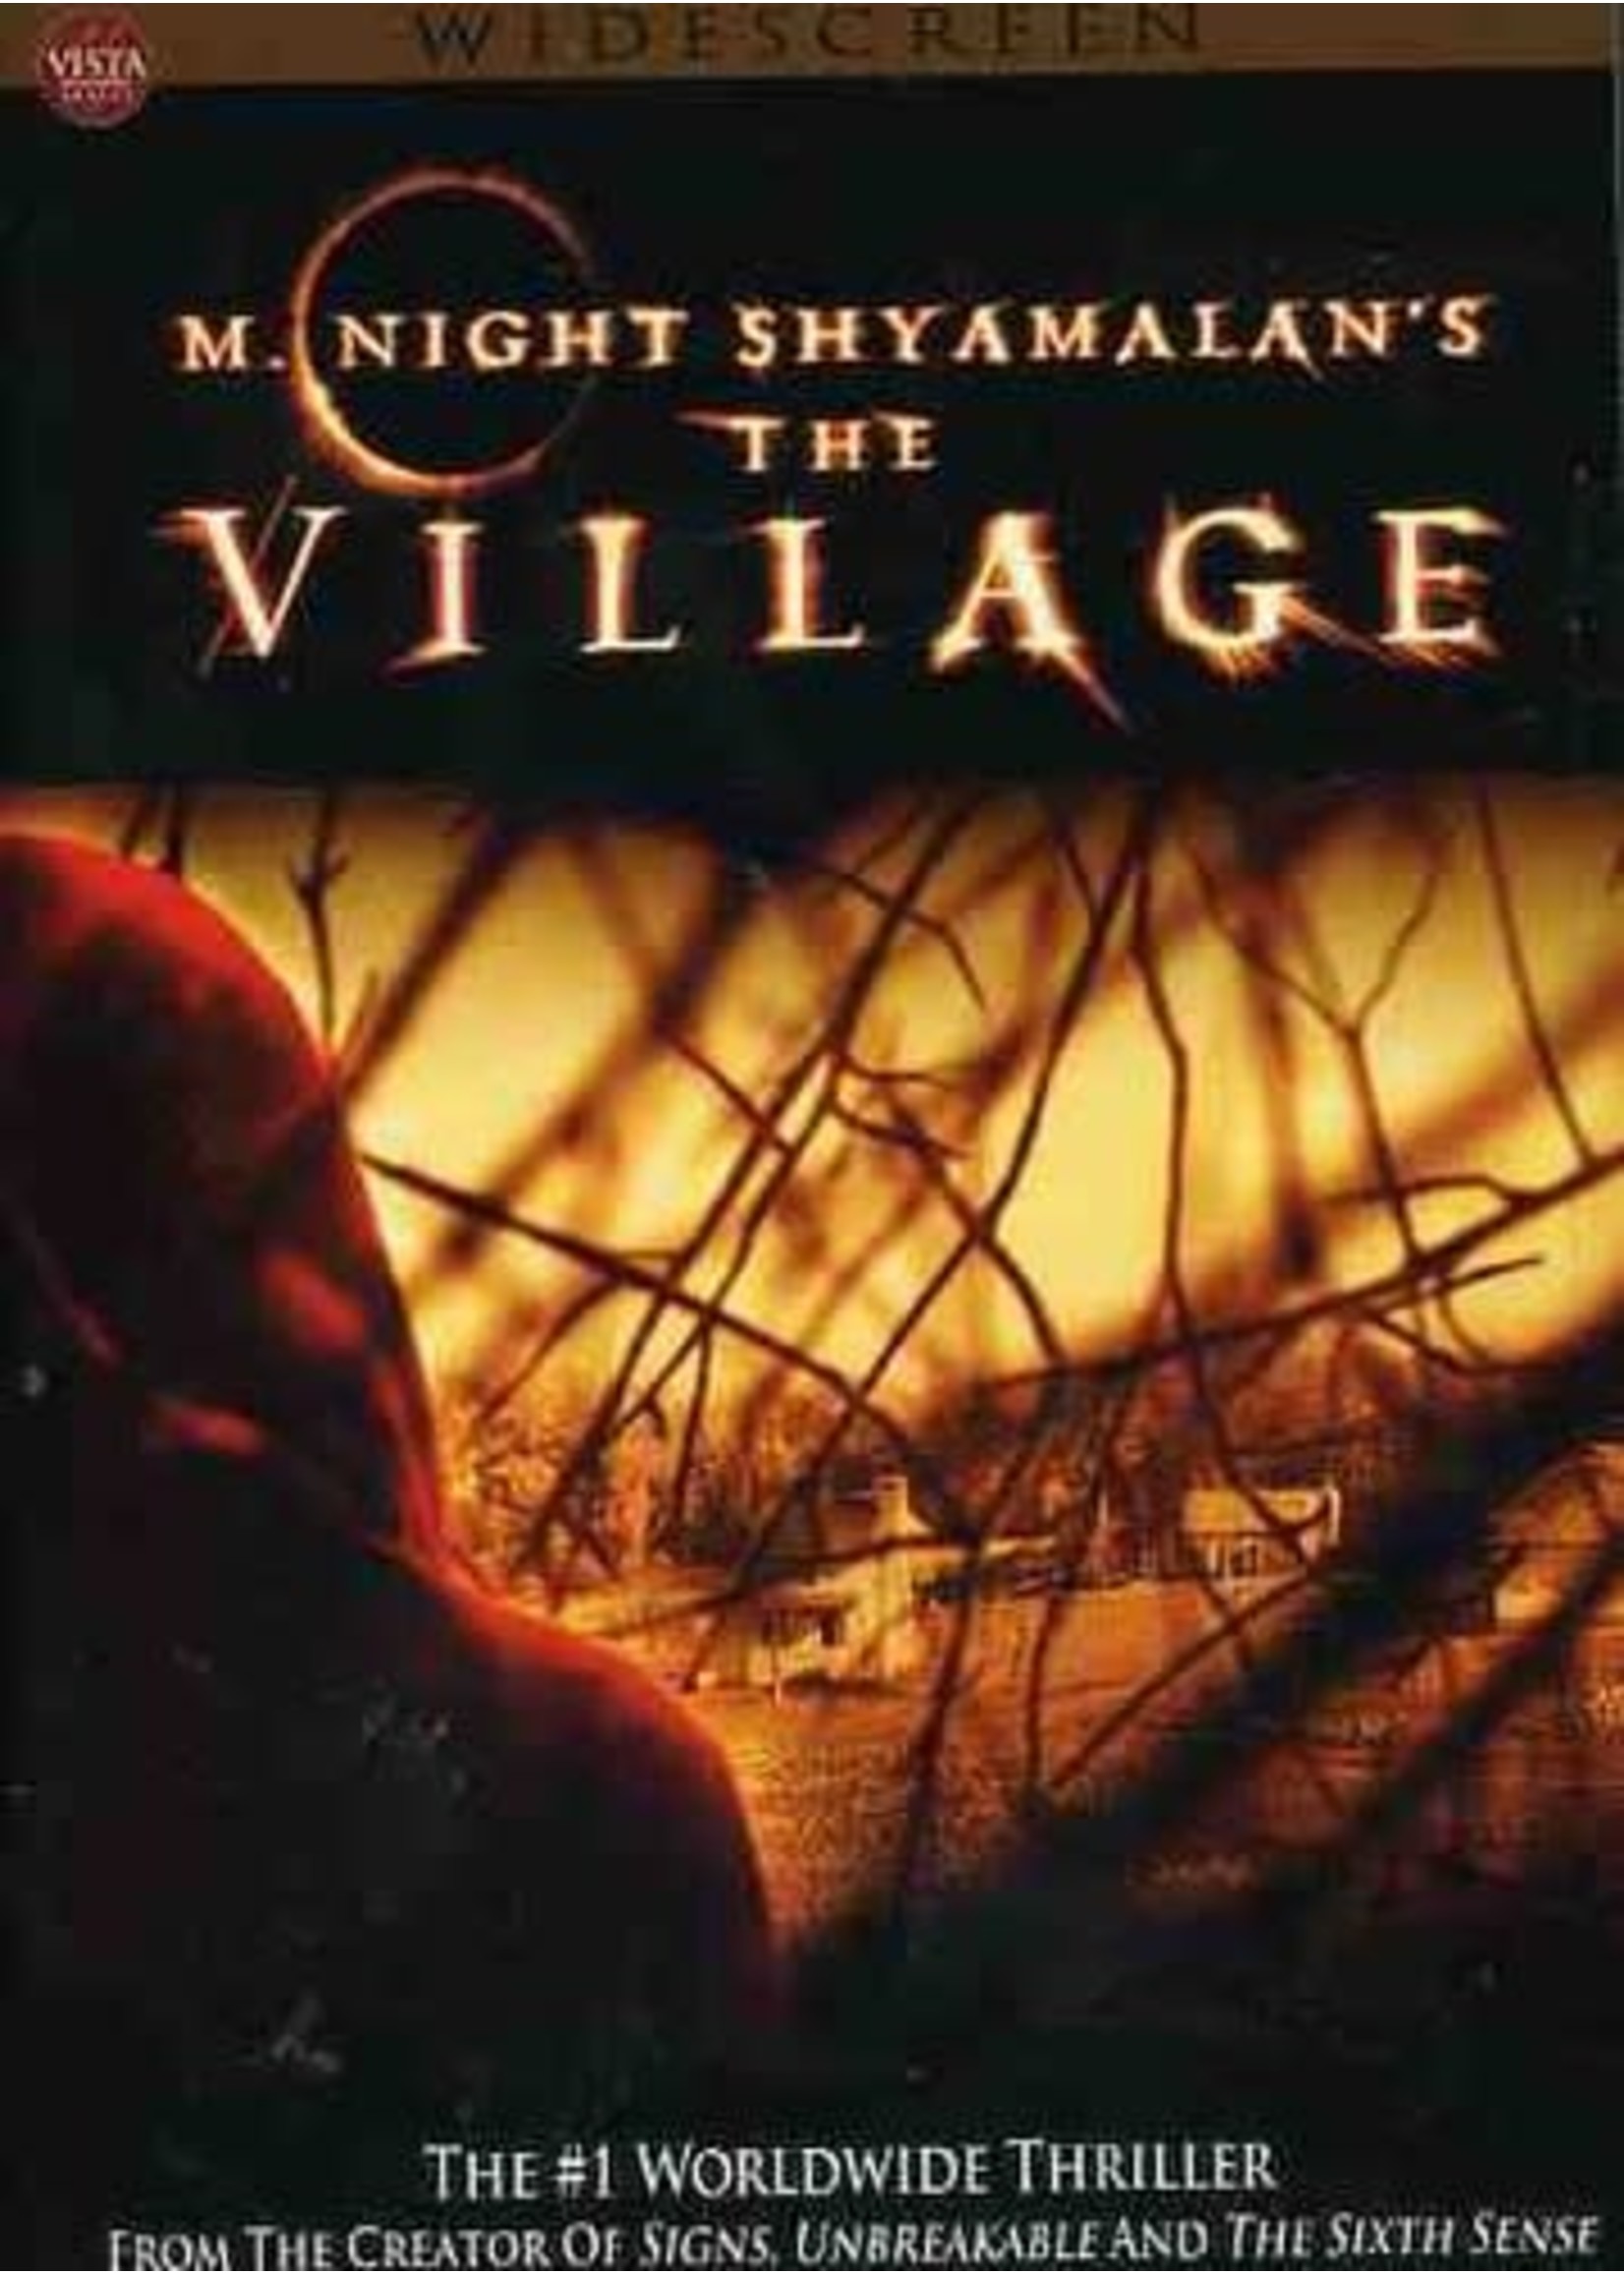 The Village DVD